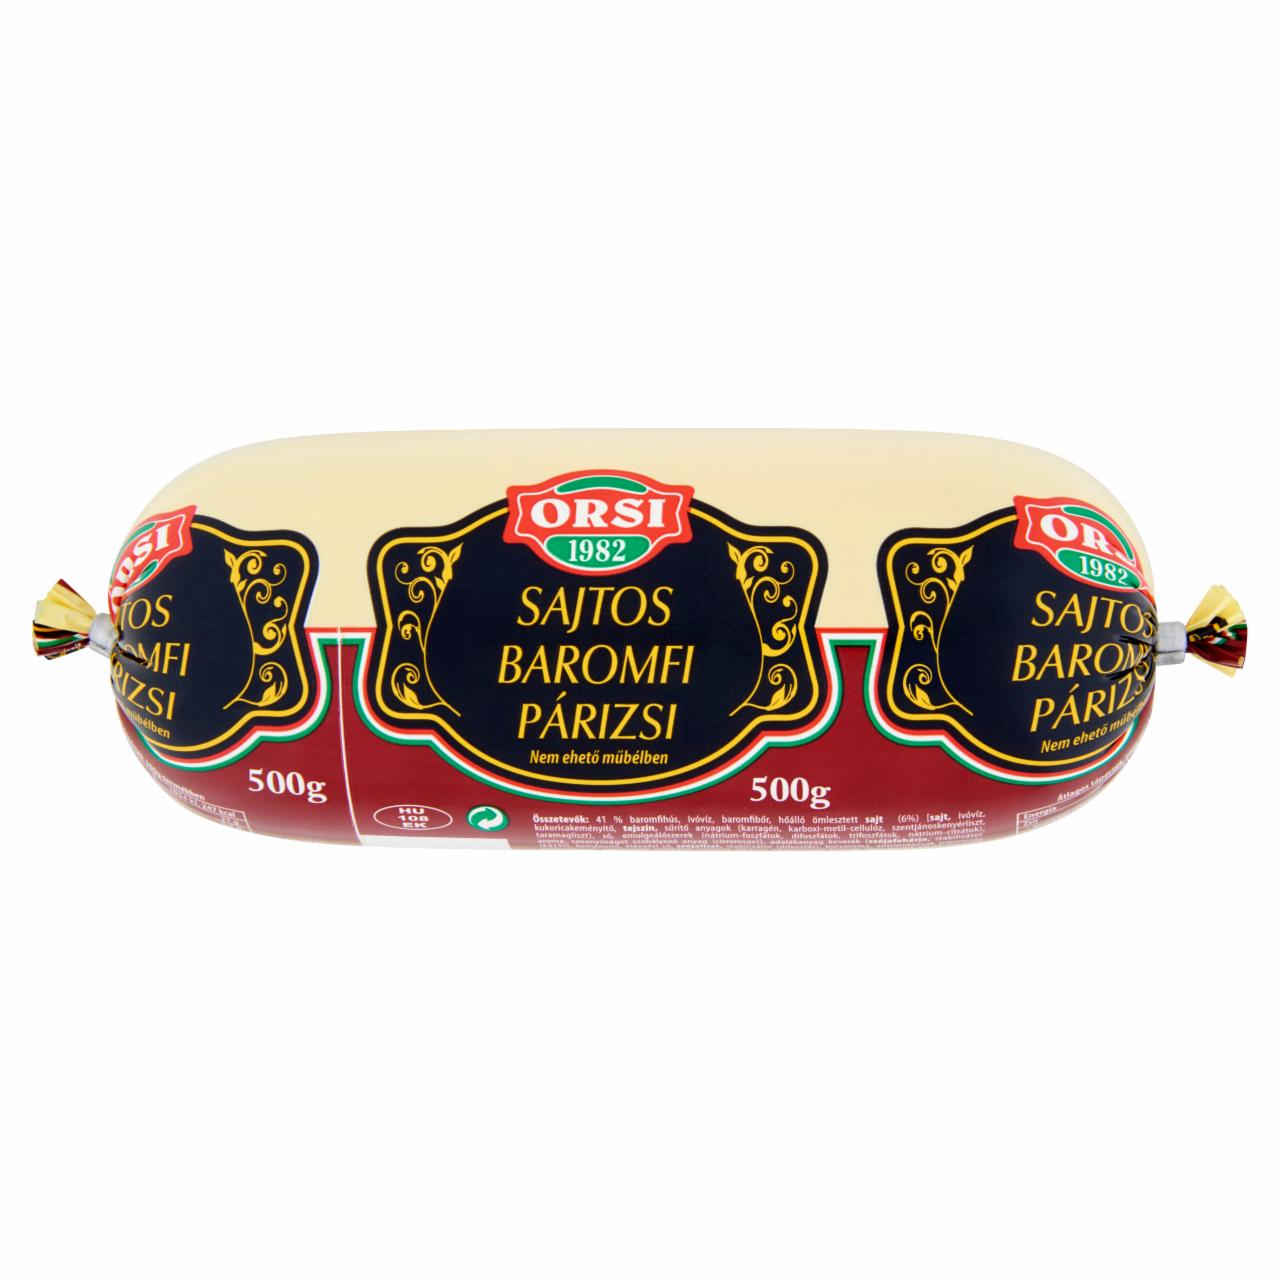 Képek - Orsi sajtos baromfi párizsi 500 g